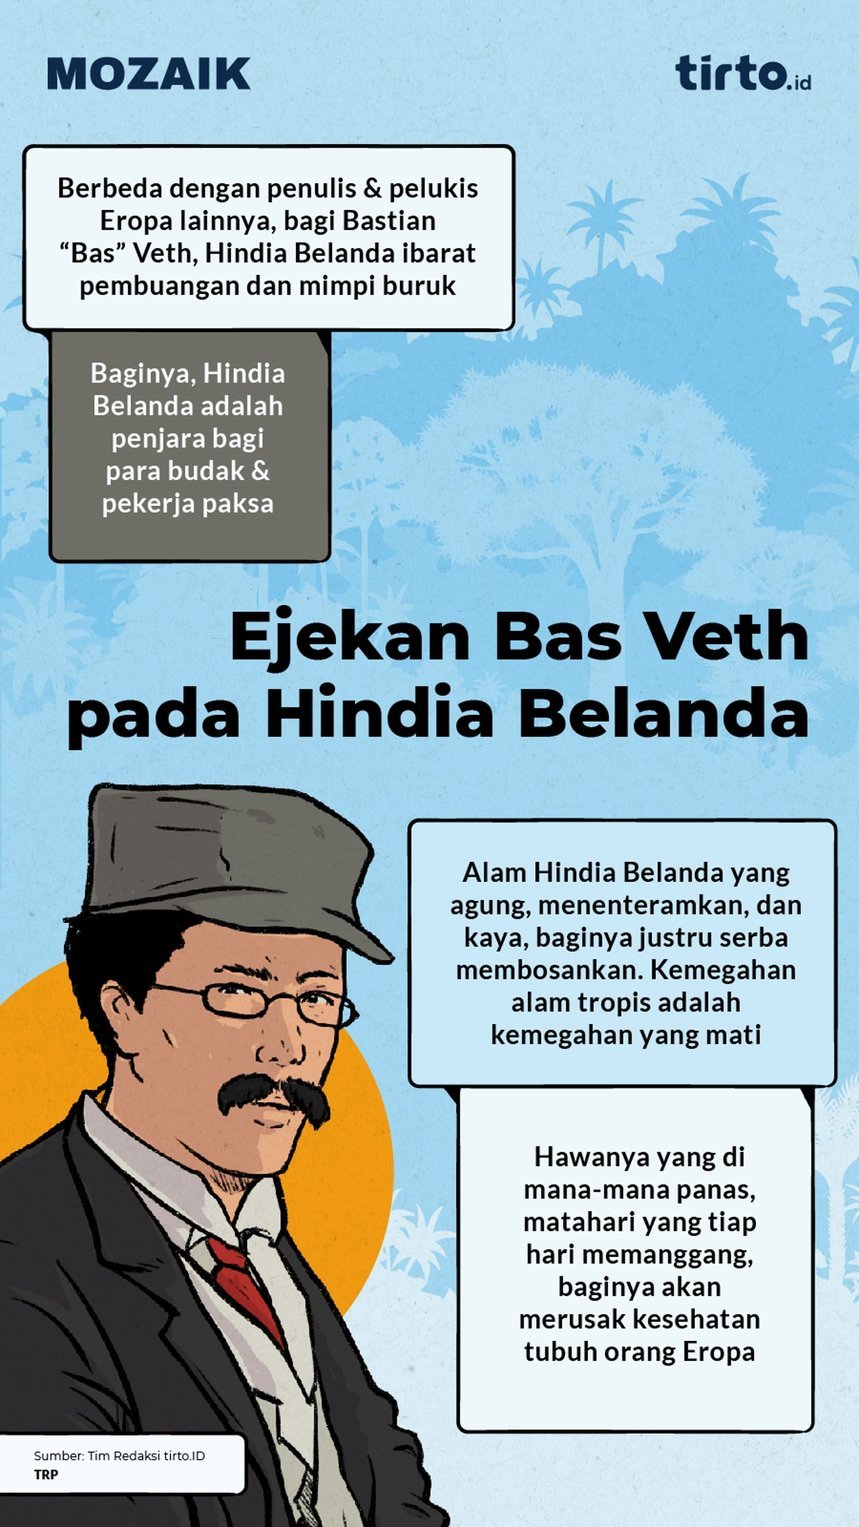 Infografik Mozaik Ejekan Bas Veth pada Hindia Belanda